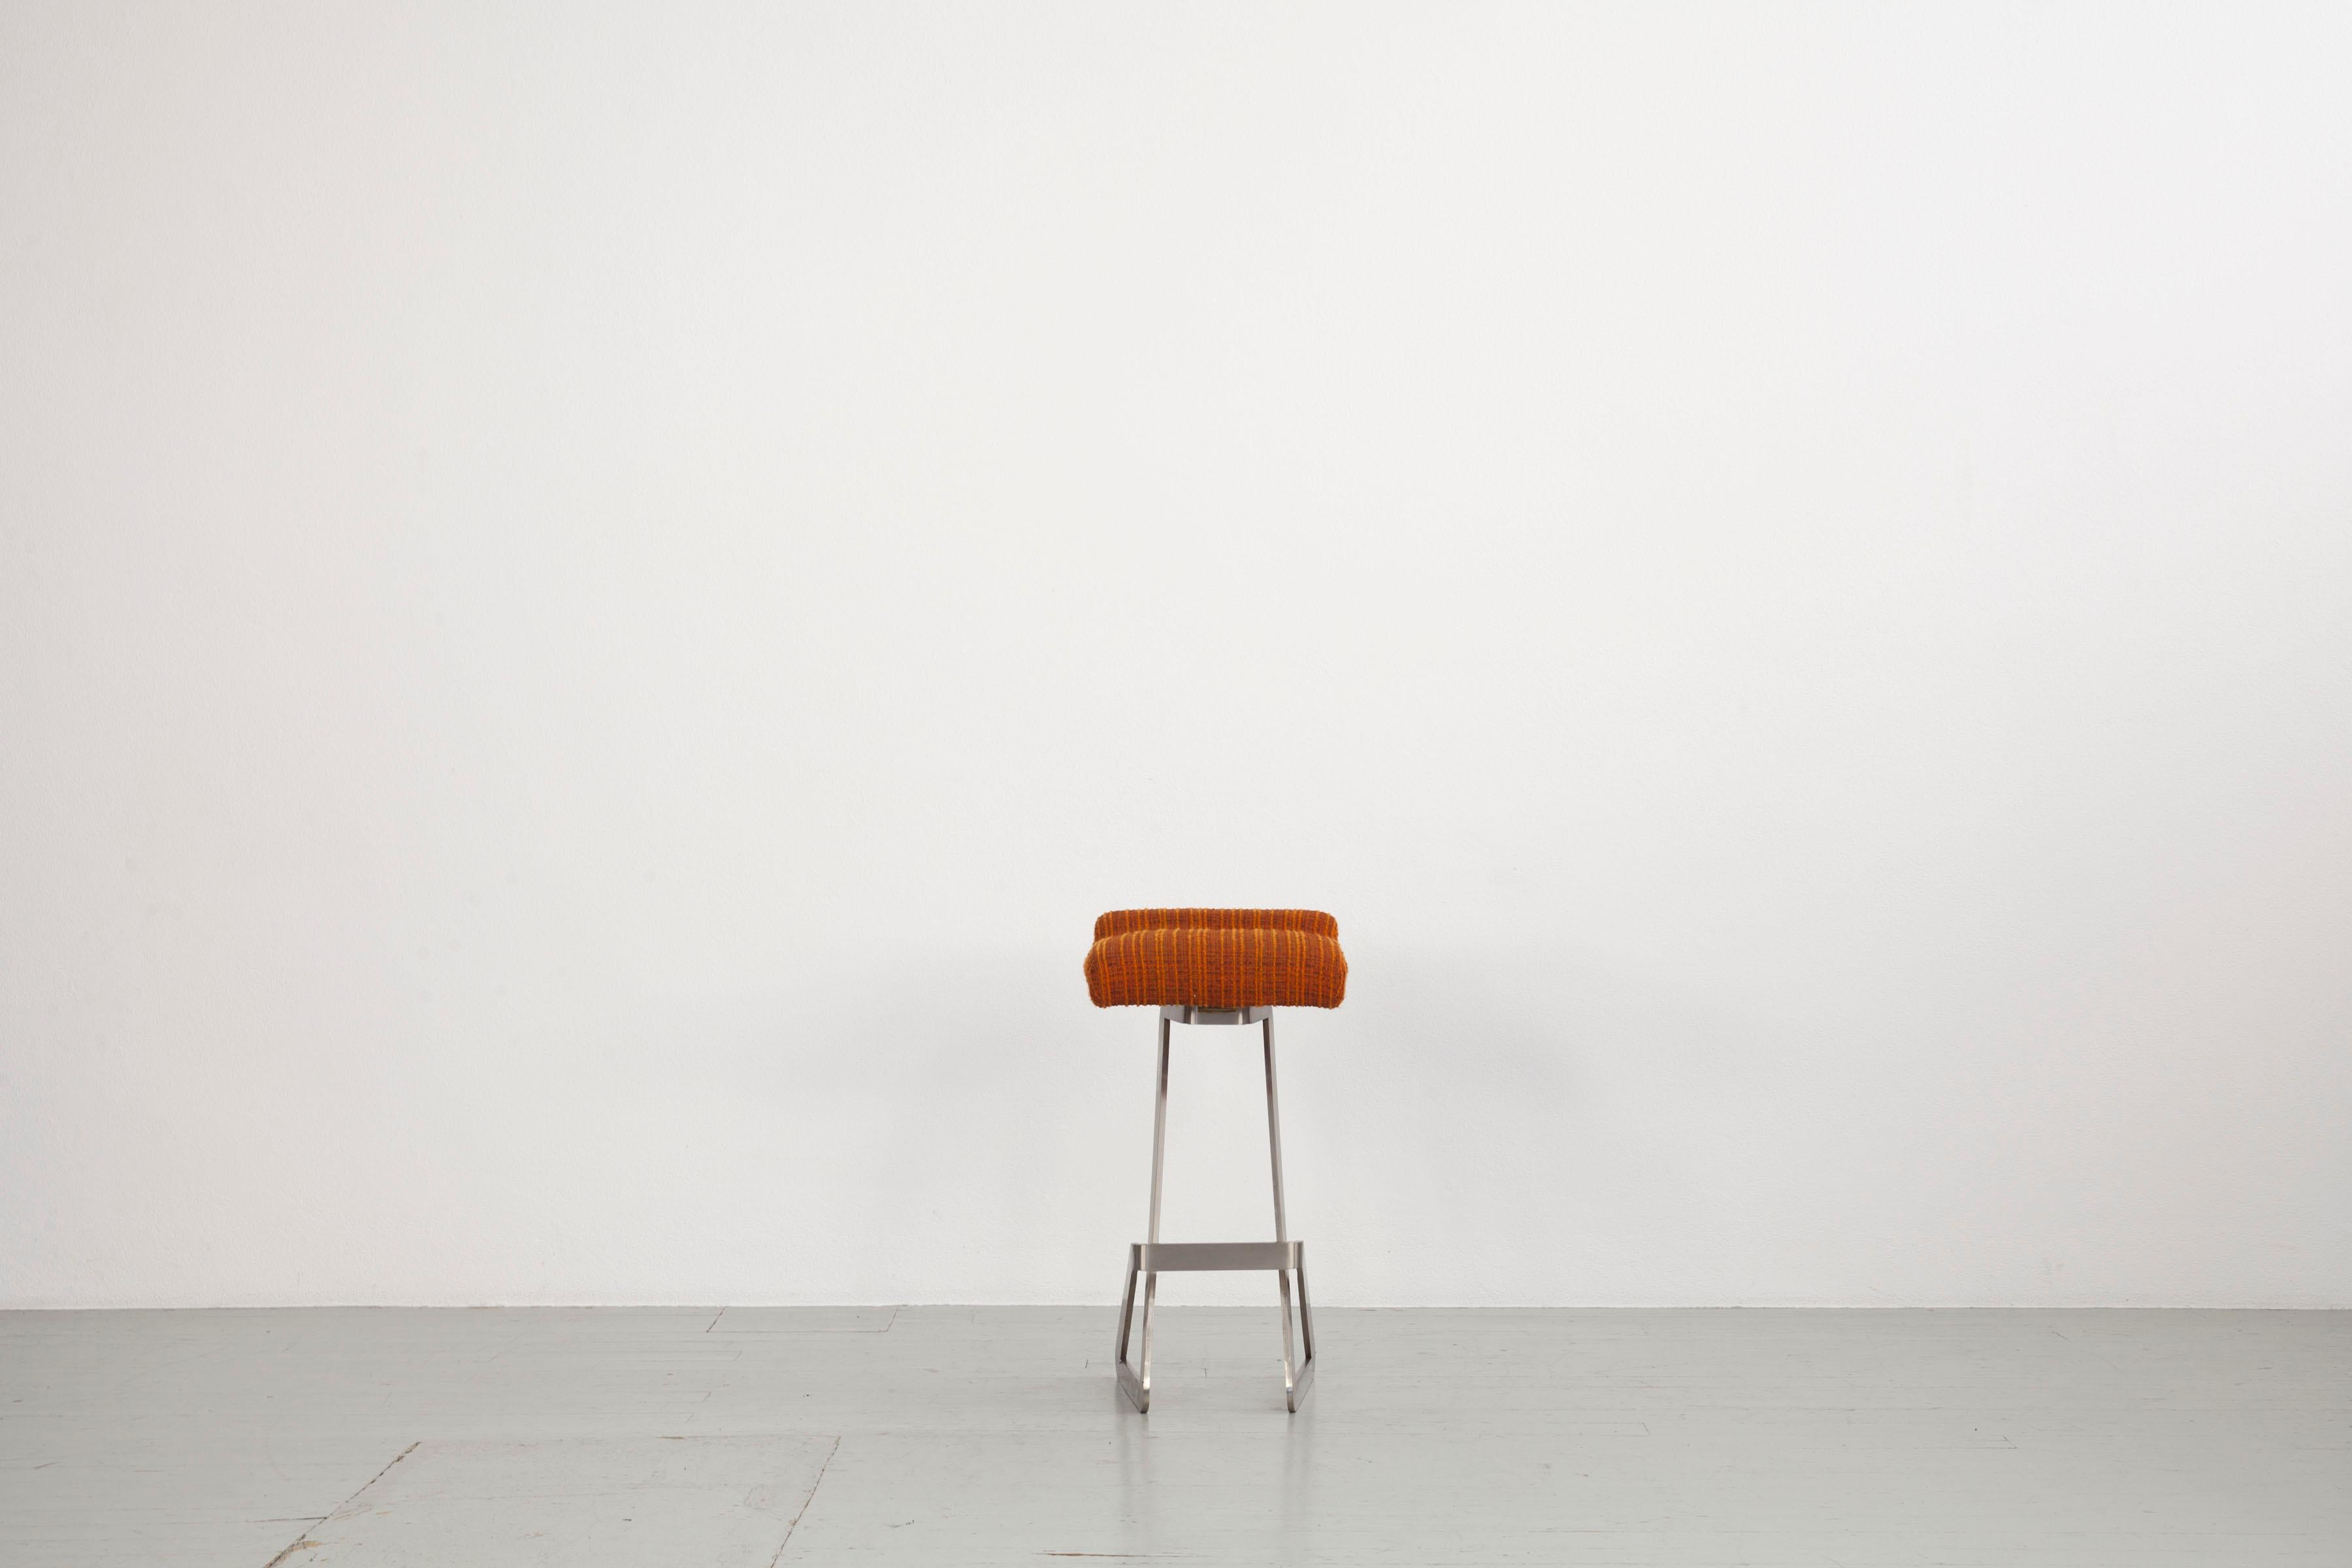 Italienisches Barhocker-Set von 1970, entworfen von Gianni Moscatelli und hergestellt von Formanova. Die vier Hocker sind mit einem originalen Brokatstoff in der Farbe Orange bezogen. Ihre Beine sind aus speziell geformtem Chrom gefertigt. Bis auf